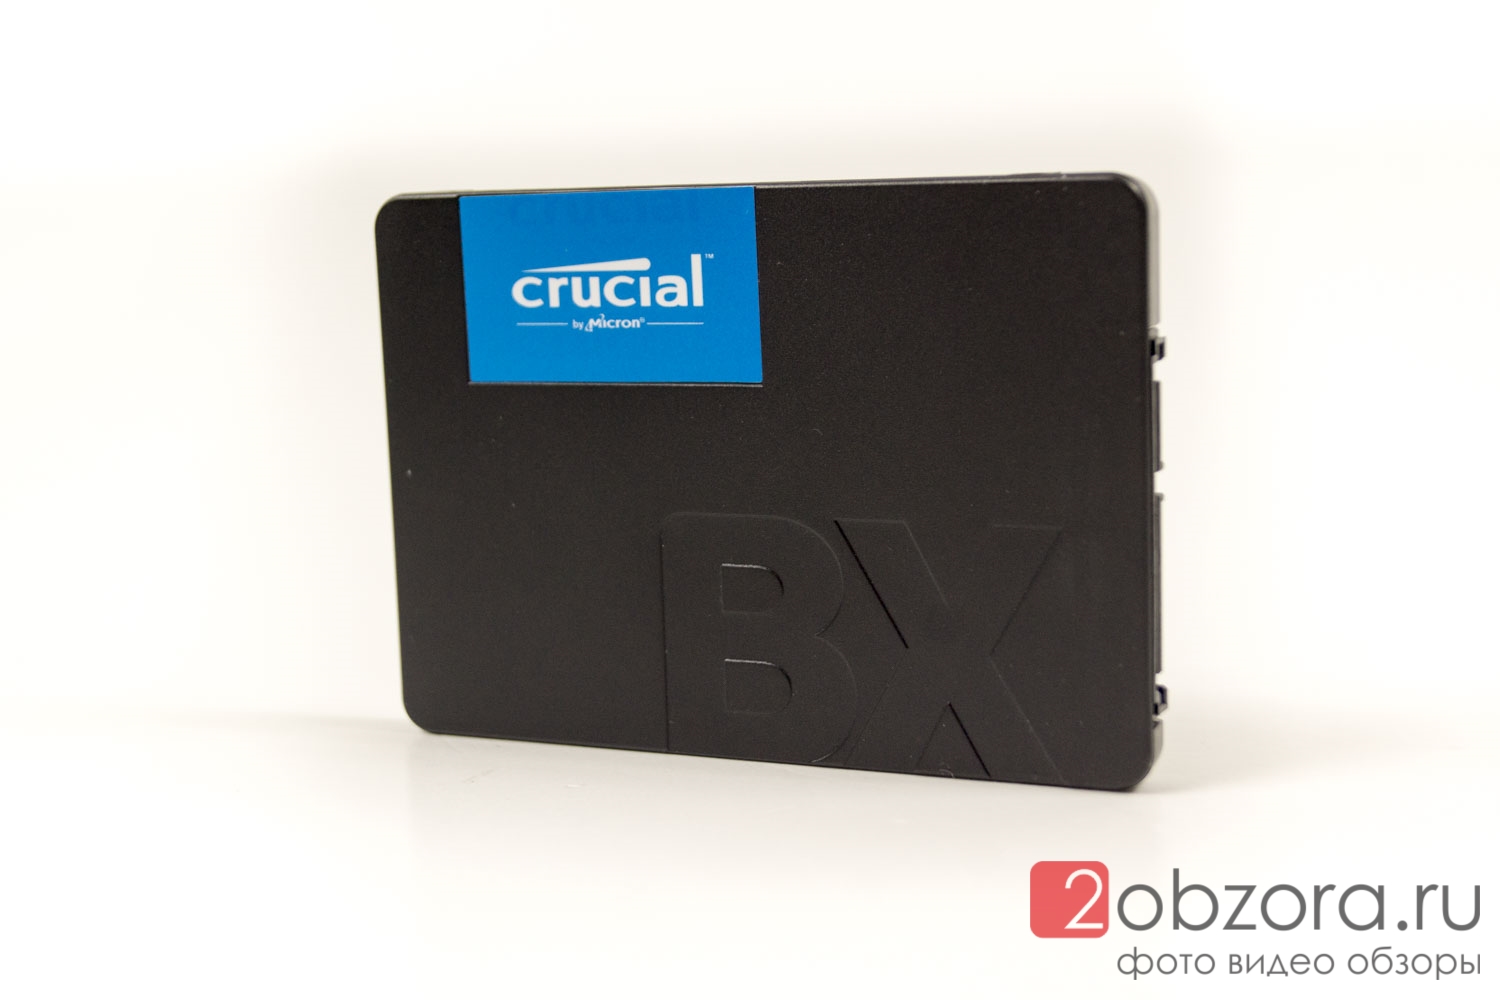 Обзор на SSD диск Crucial BX500 240 Gb 3D NAND (CT240BX500SSD1)